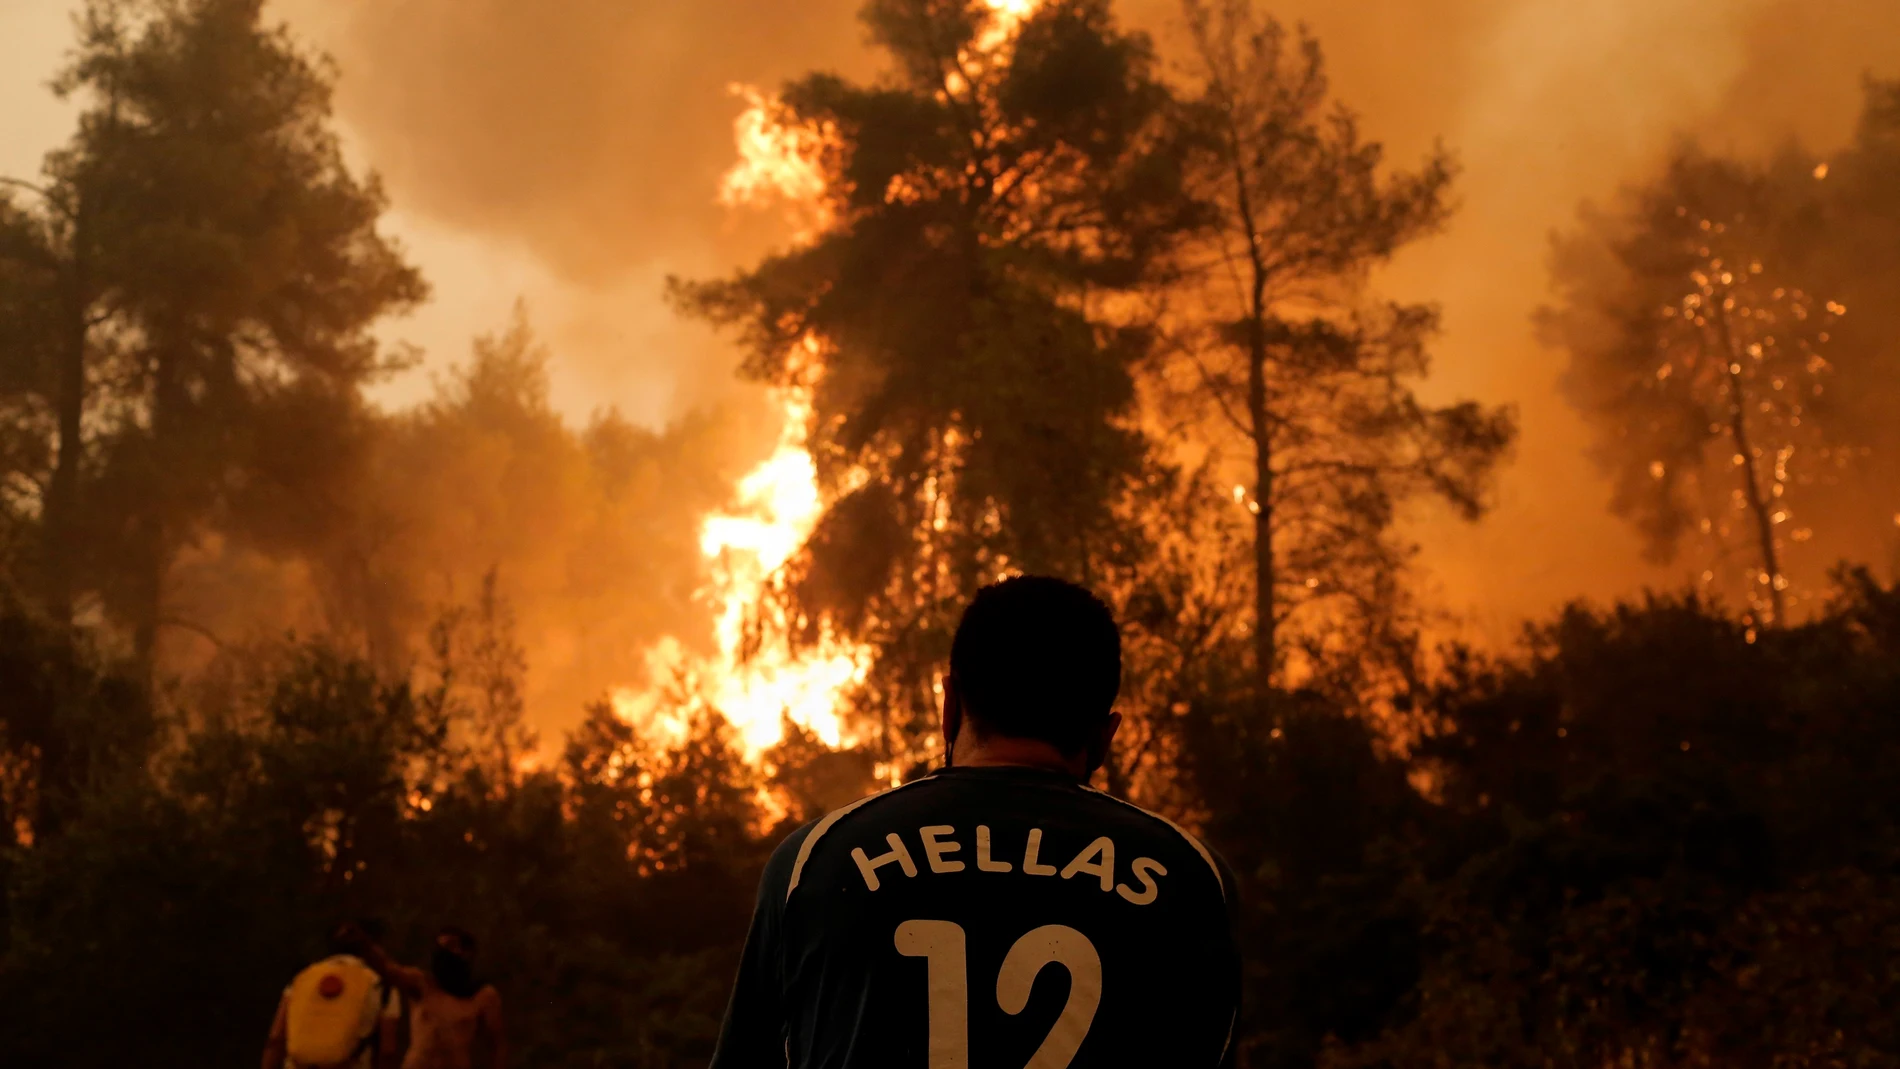 En la imagen, un incendio forestal en el pueblo de Pefki en Evia, Grecia. La ciencia admite ya efectos irreversibles del cambio climático en el planeta | Fuente: EFE/KOSTAS TSIRONIS